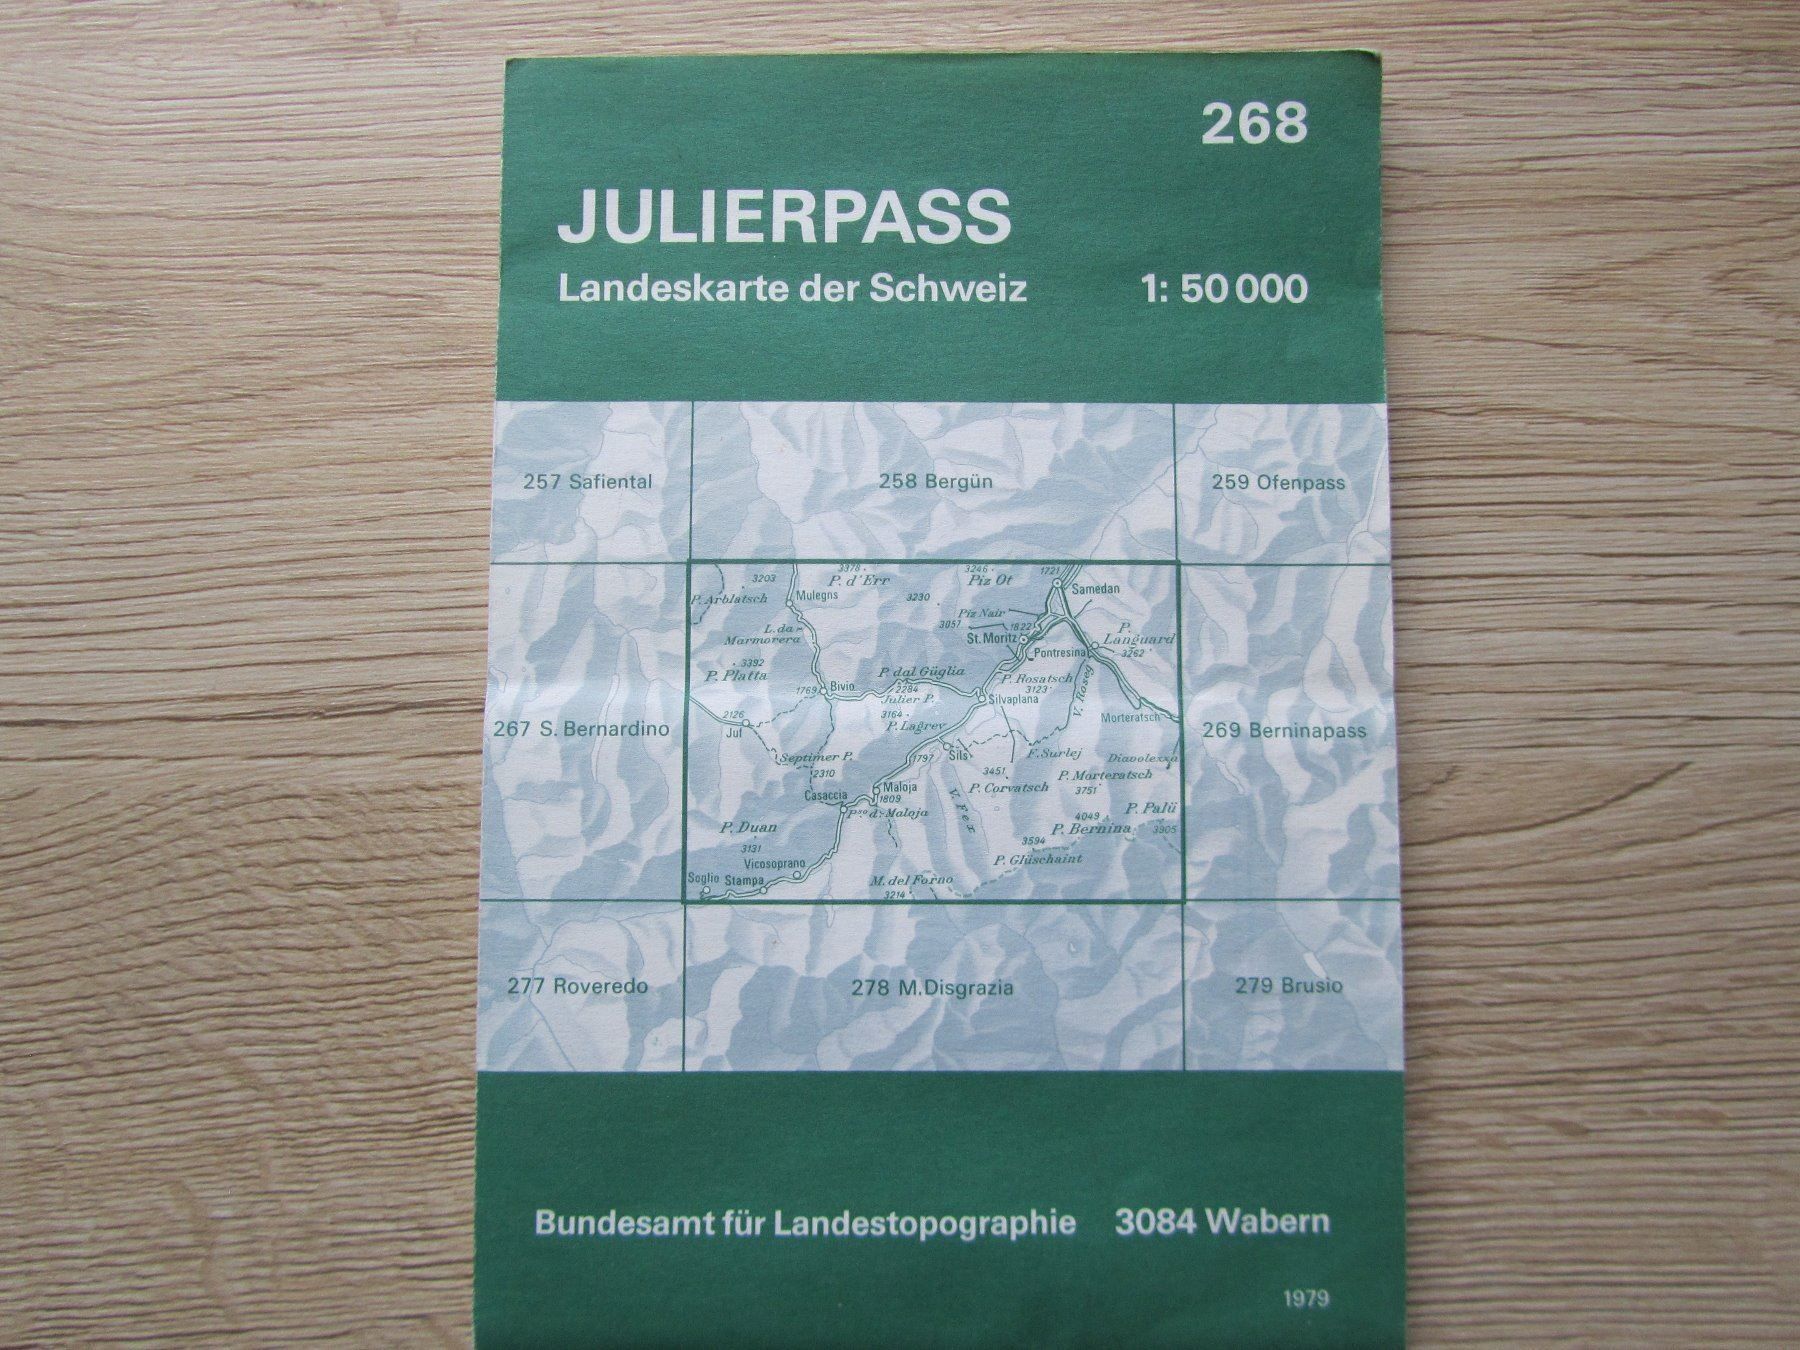 Landeskarte der Schweiz Julierpass | Kaufen auf Ricardo